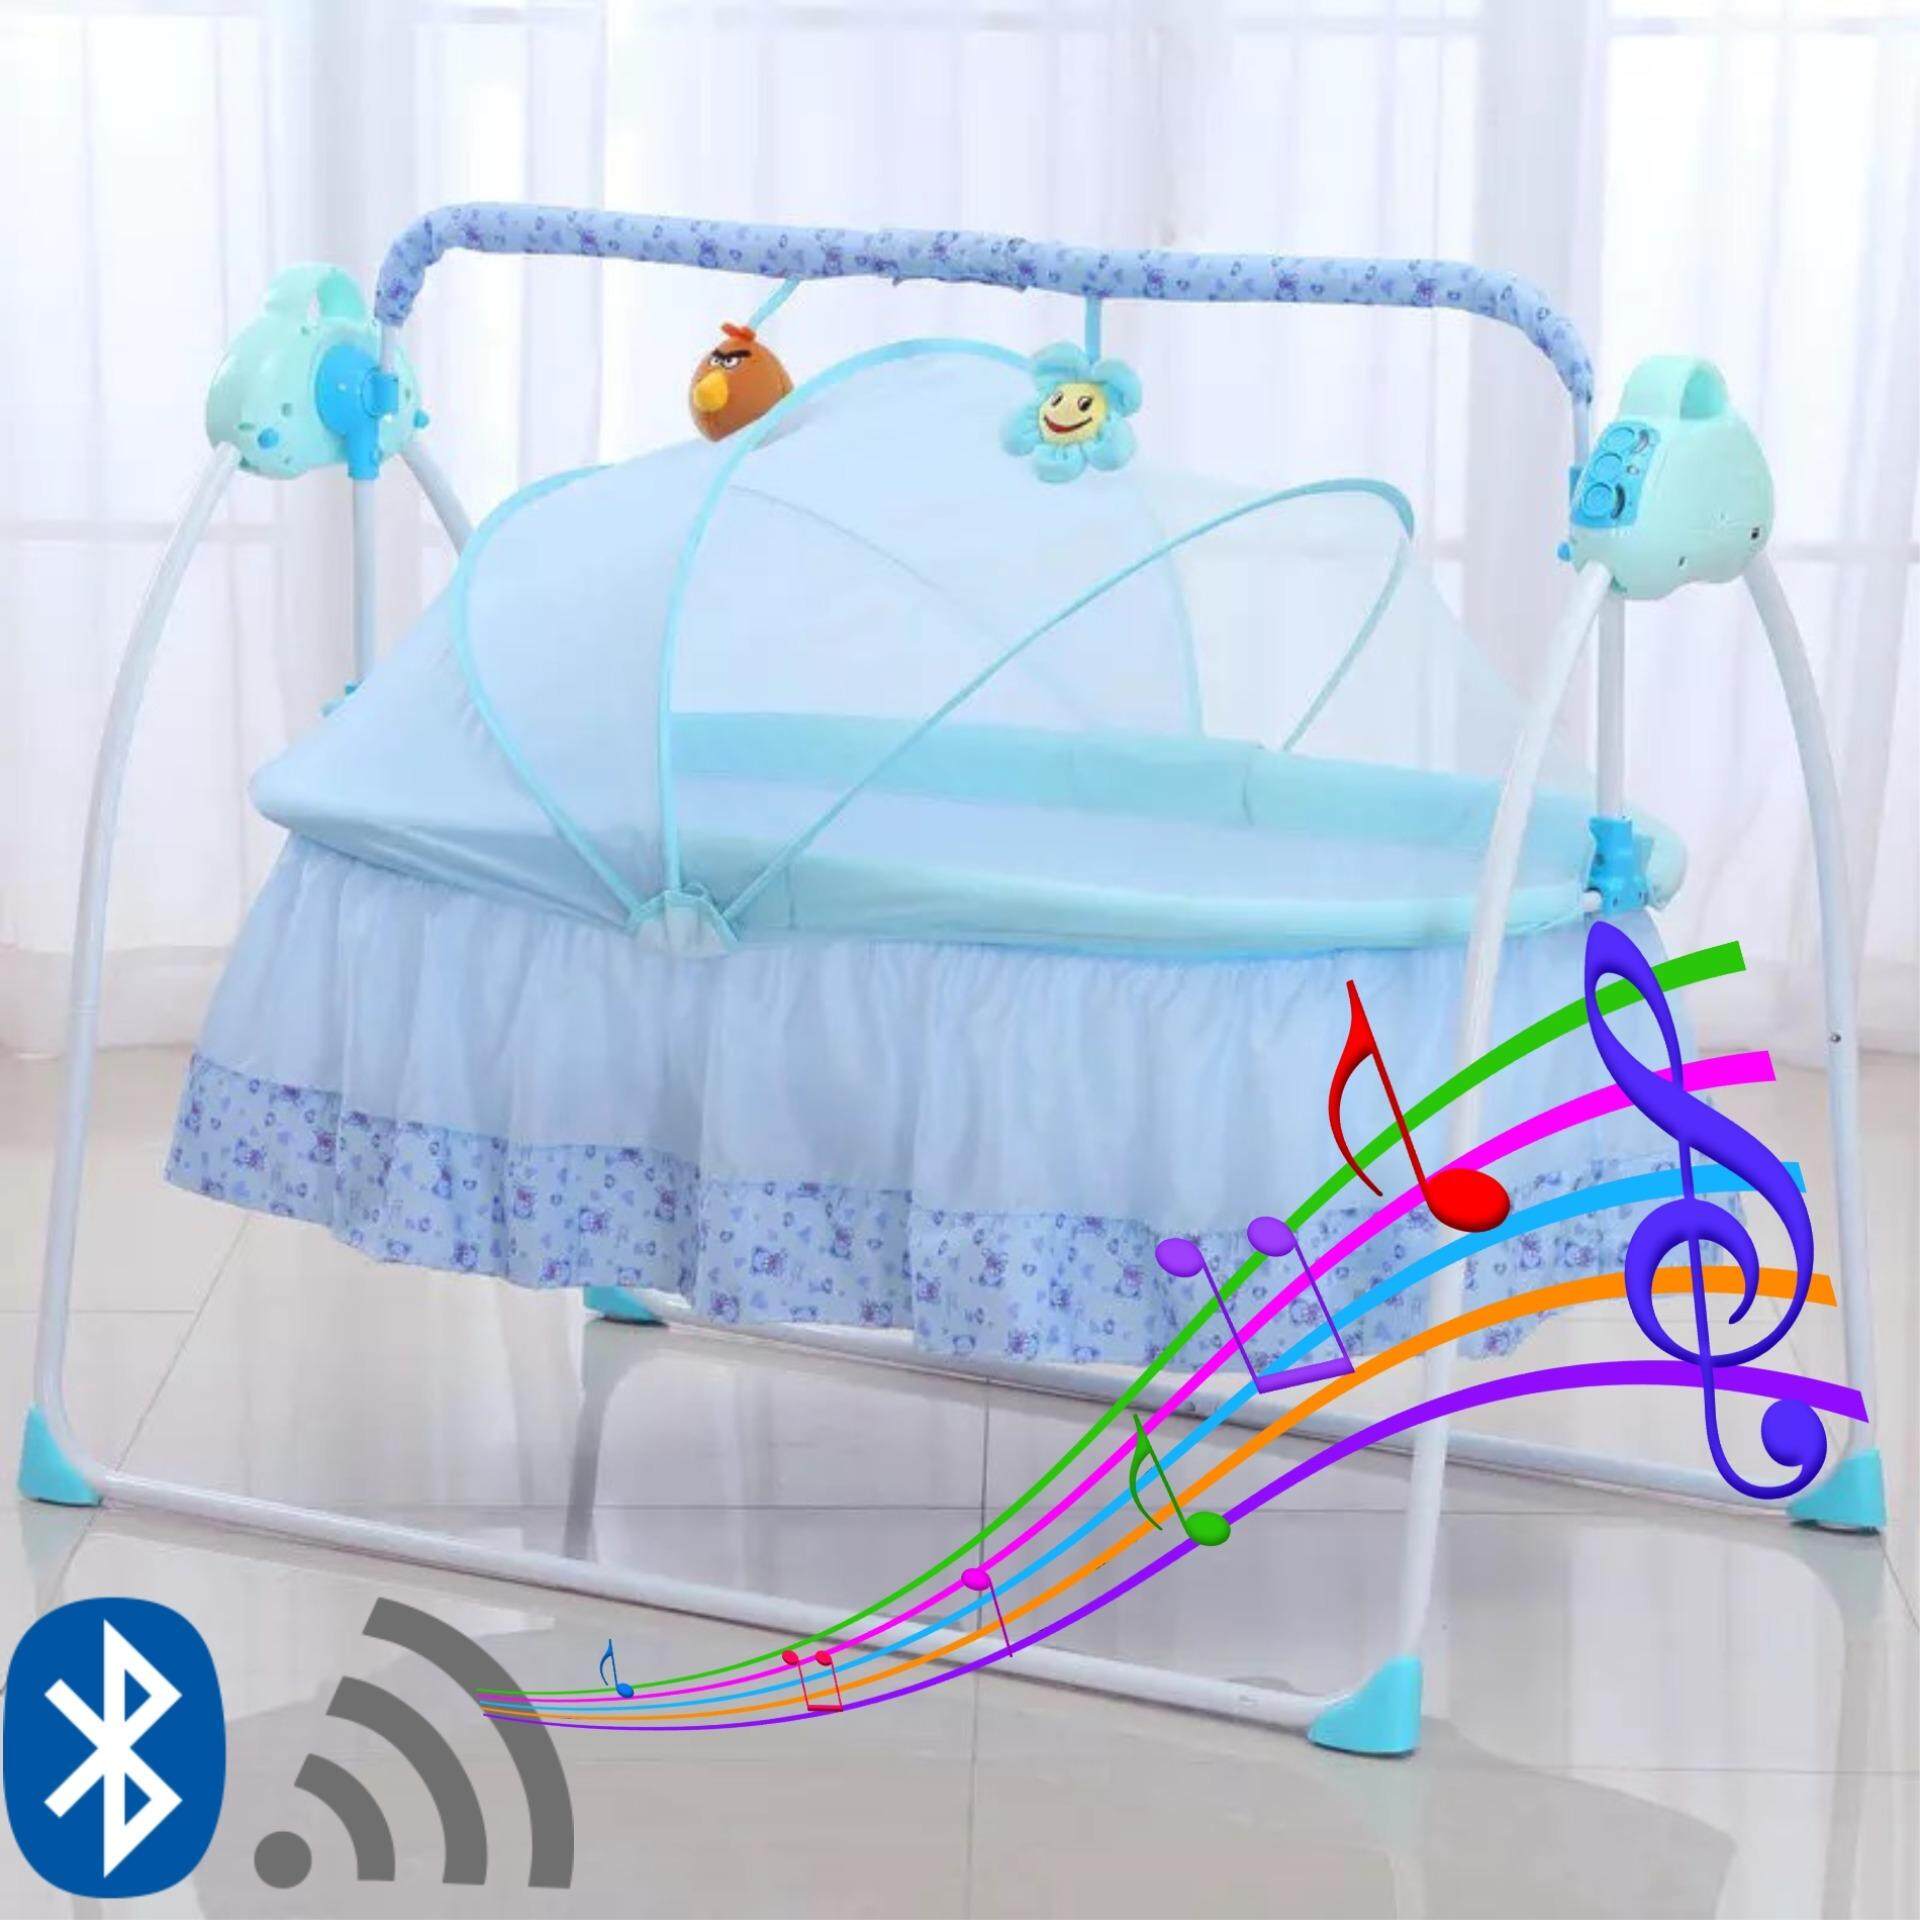 โปรโมชั่น Baby เปลไกวไฟฟ้าอัตโนมัติ มีเสียงดนตรี+เสียบUSB+ระบบ Bluetooth